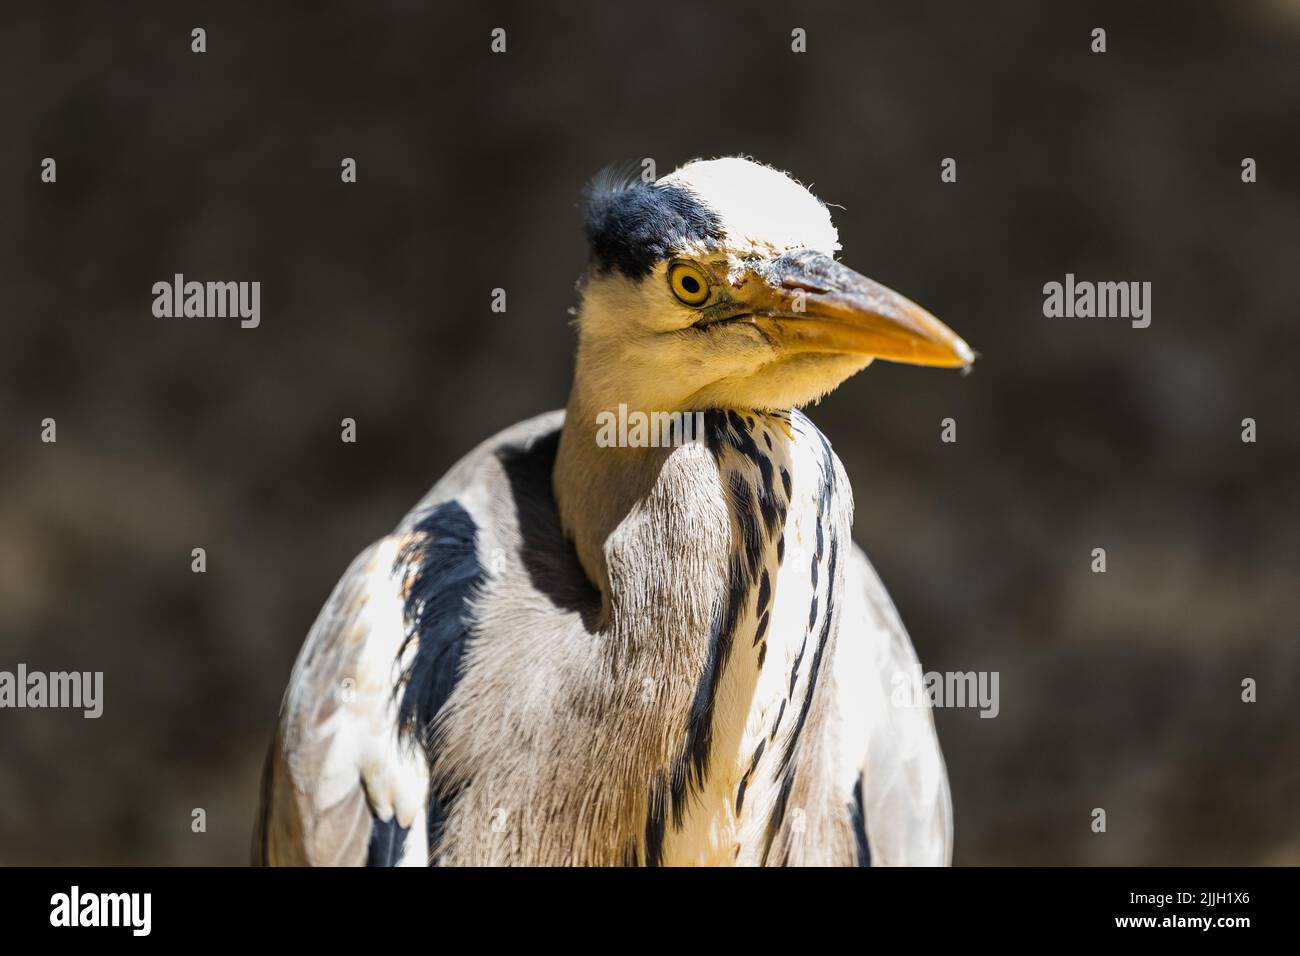 Un closeup shot di un uccello con piume bianche e un lungo becco acuto aspetto concentrato Foto Stock